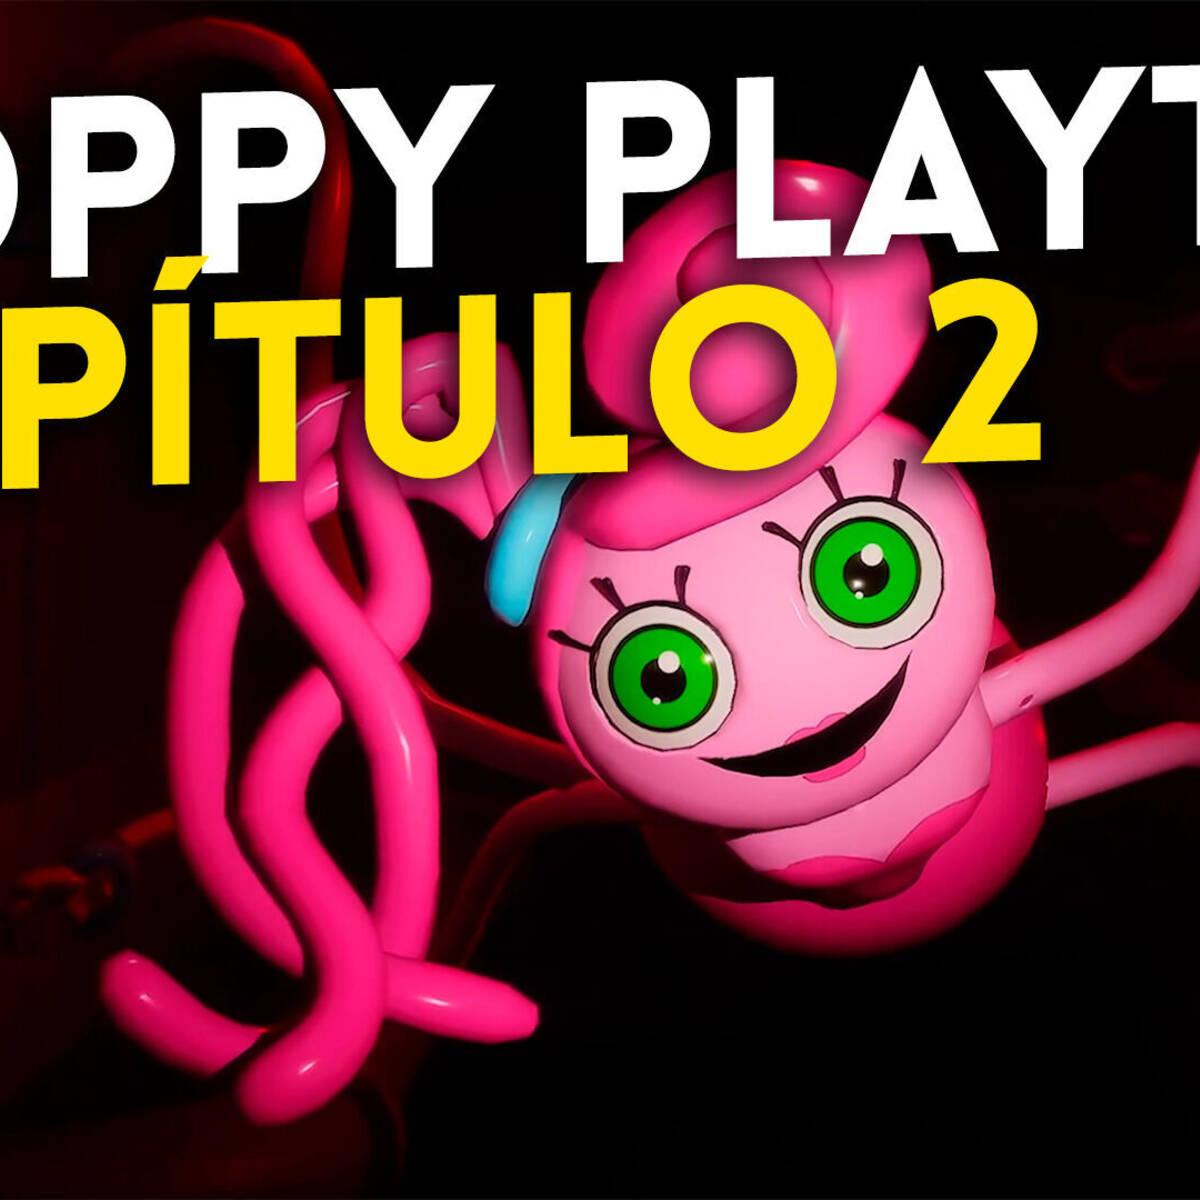 El segundo capítulo de Poppy Playtime ya está disponible - Vandal